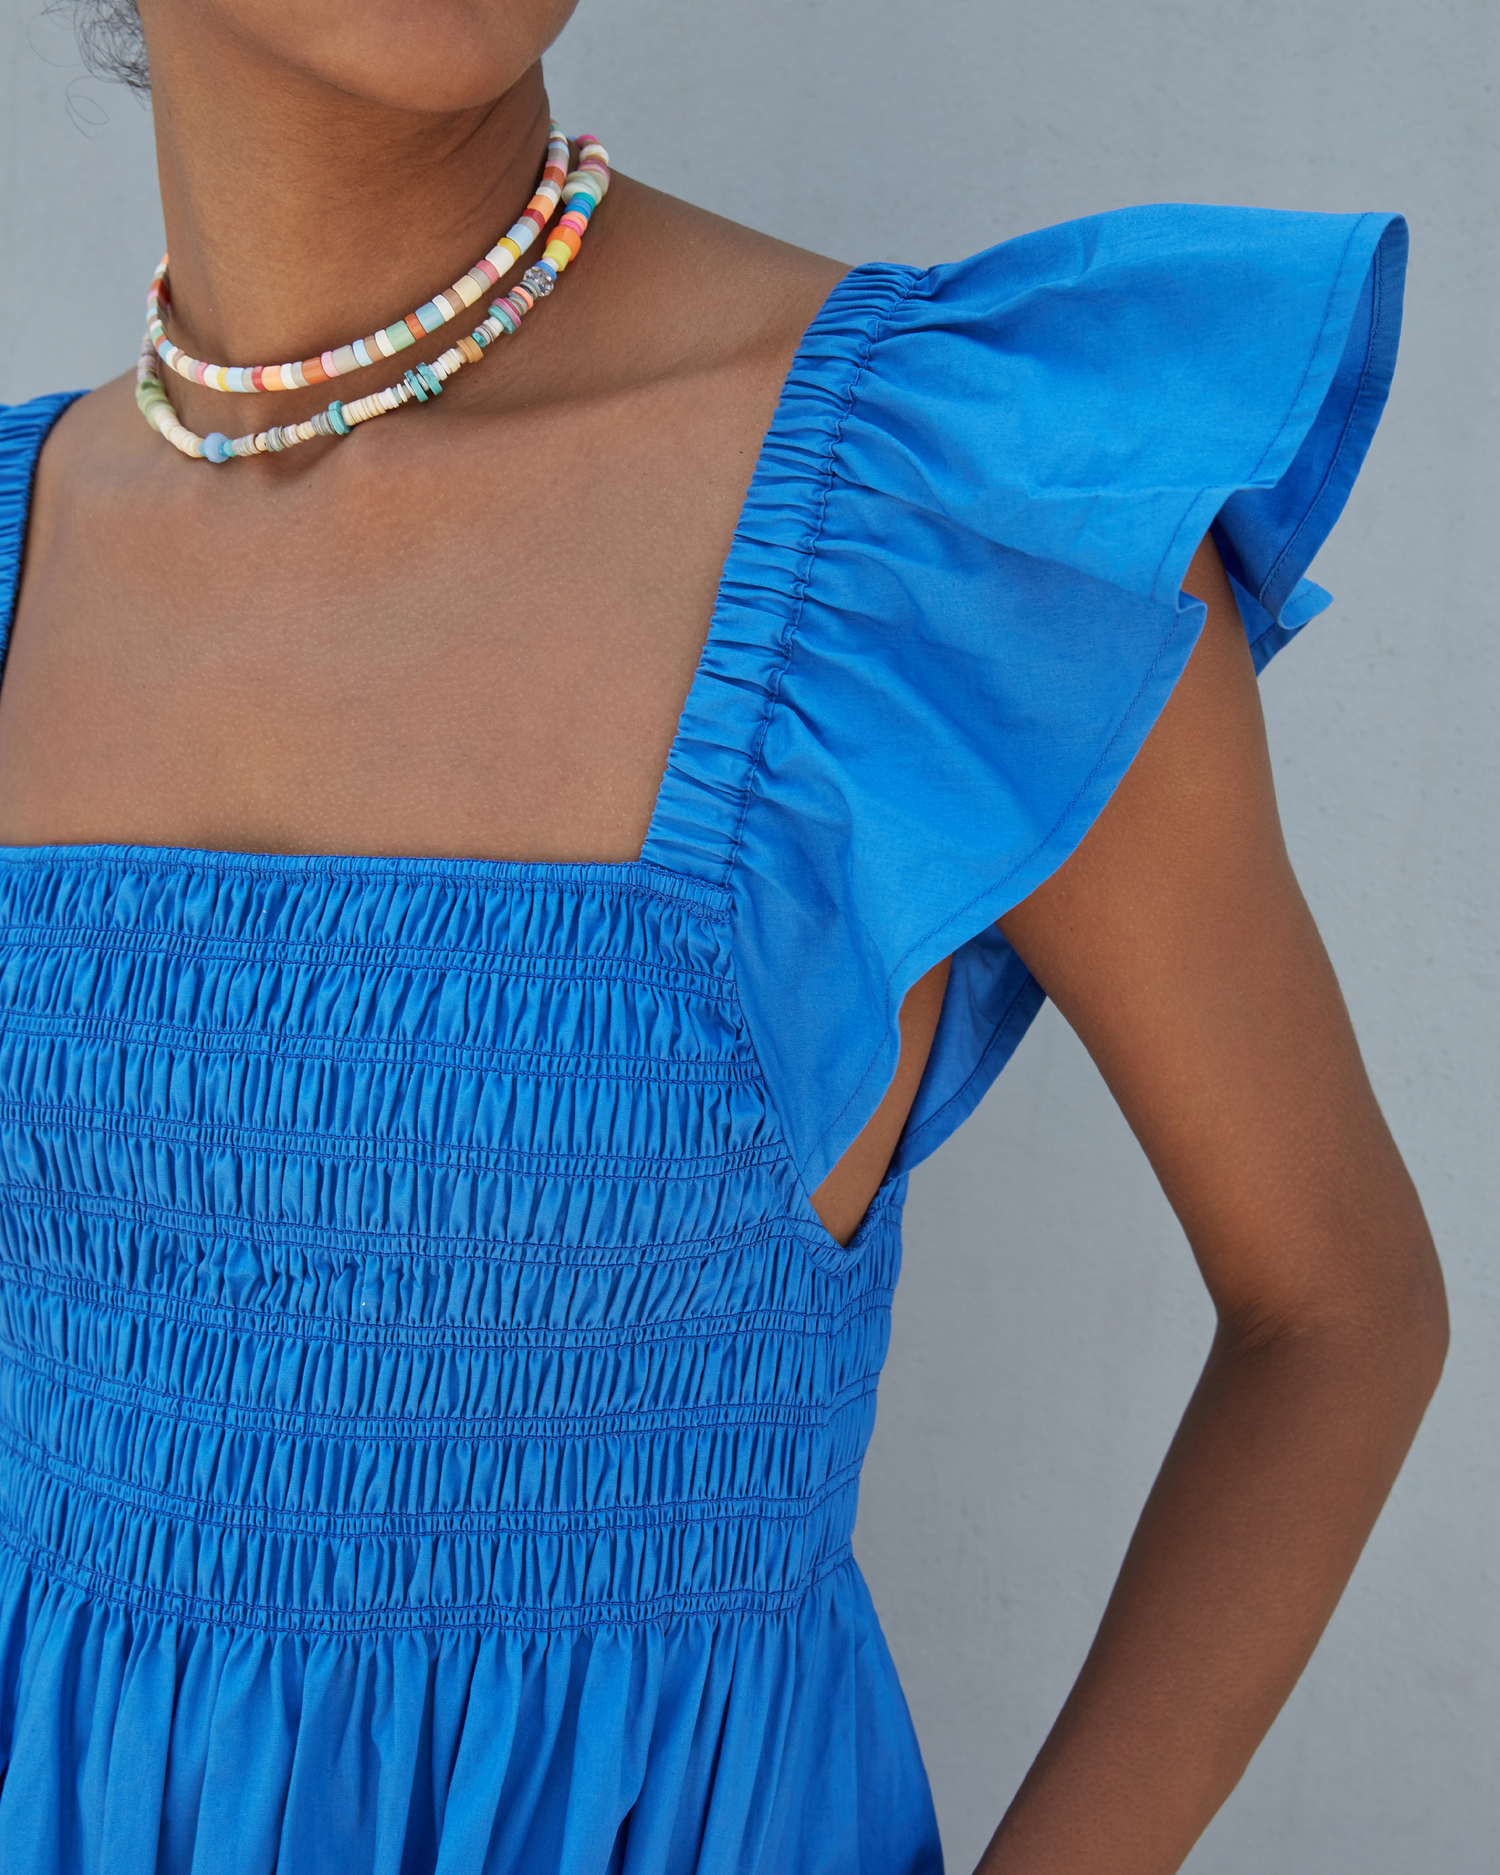 Sixth image of Tuscany Dress, a blue maxi dress, smocked bodice, ruffled cap sleeves, pockets